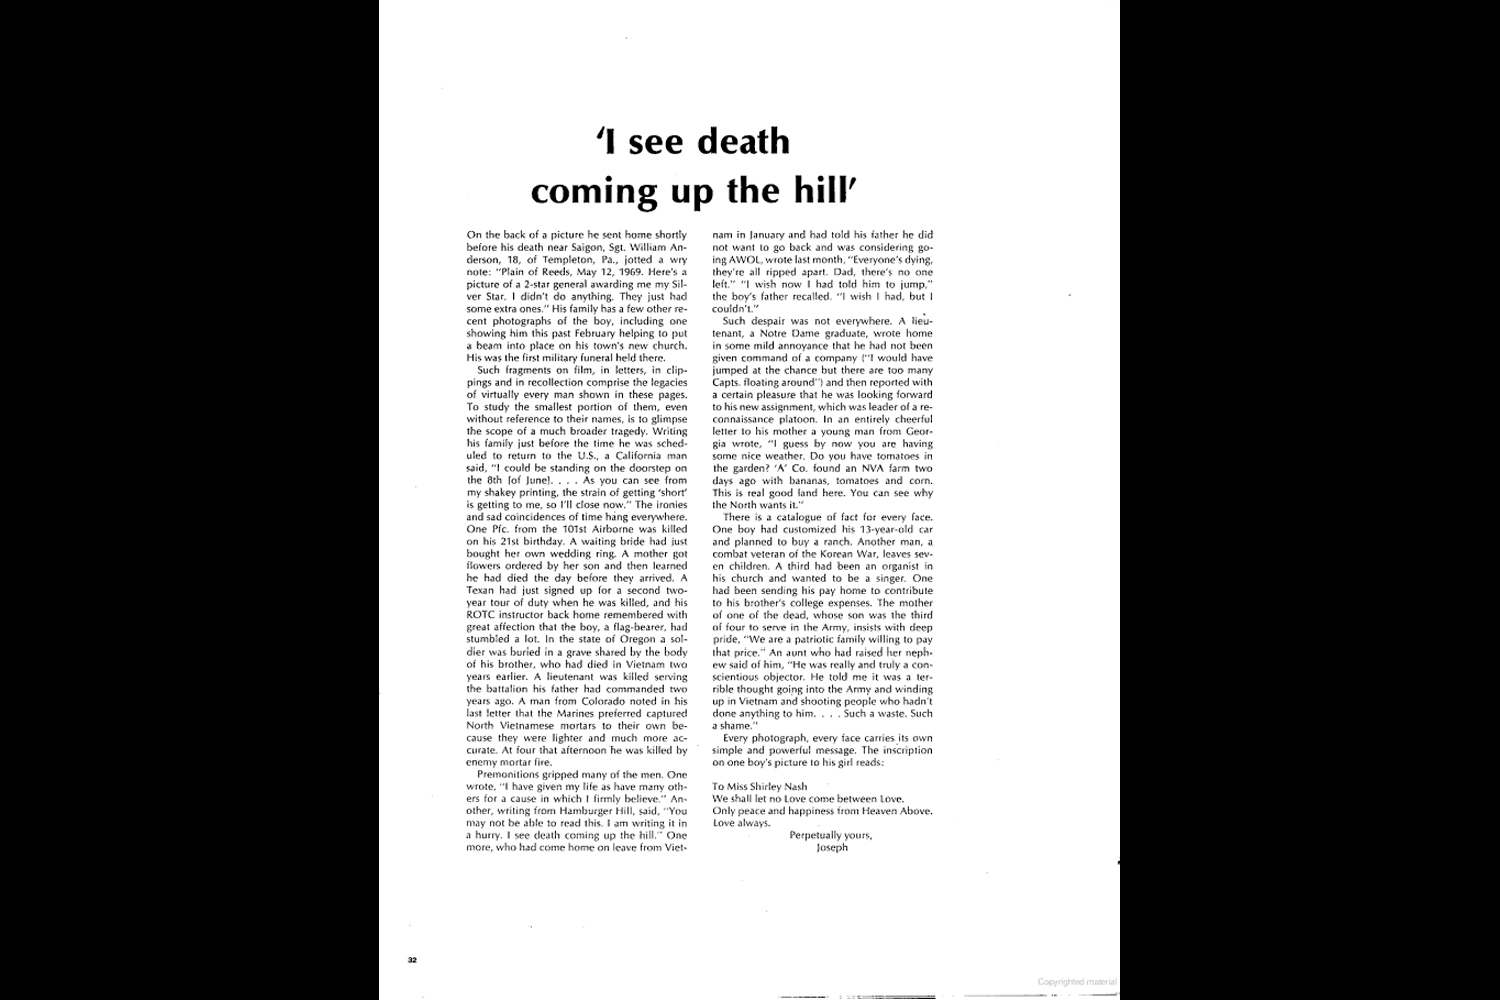 "Vietnam: One Week's Dead," LIFE magazine, June 27, 1969.